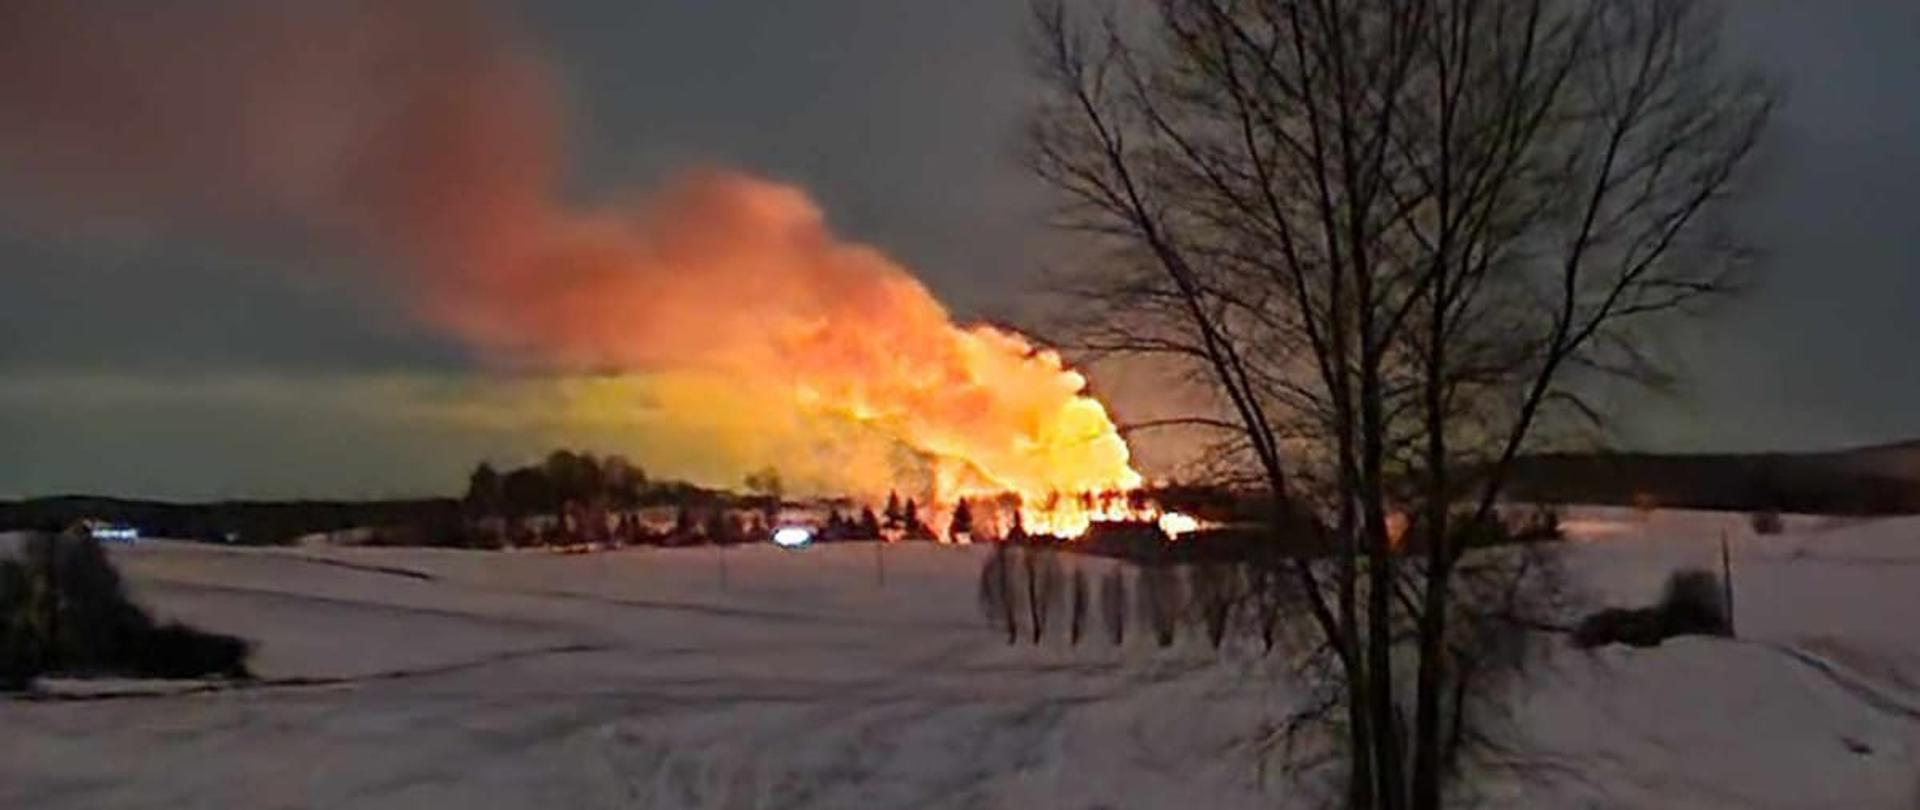 Zdjęcie przedstawia pożar stodoły